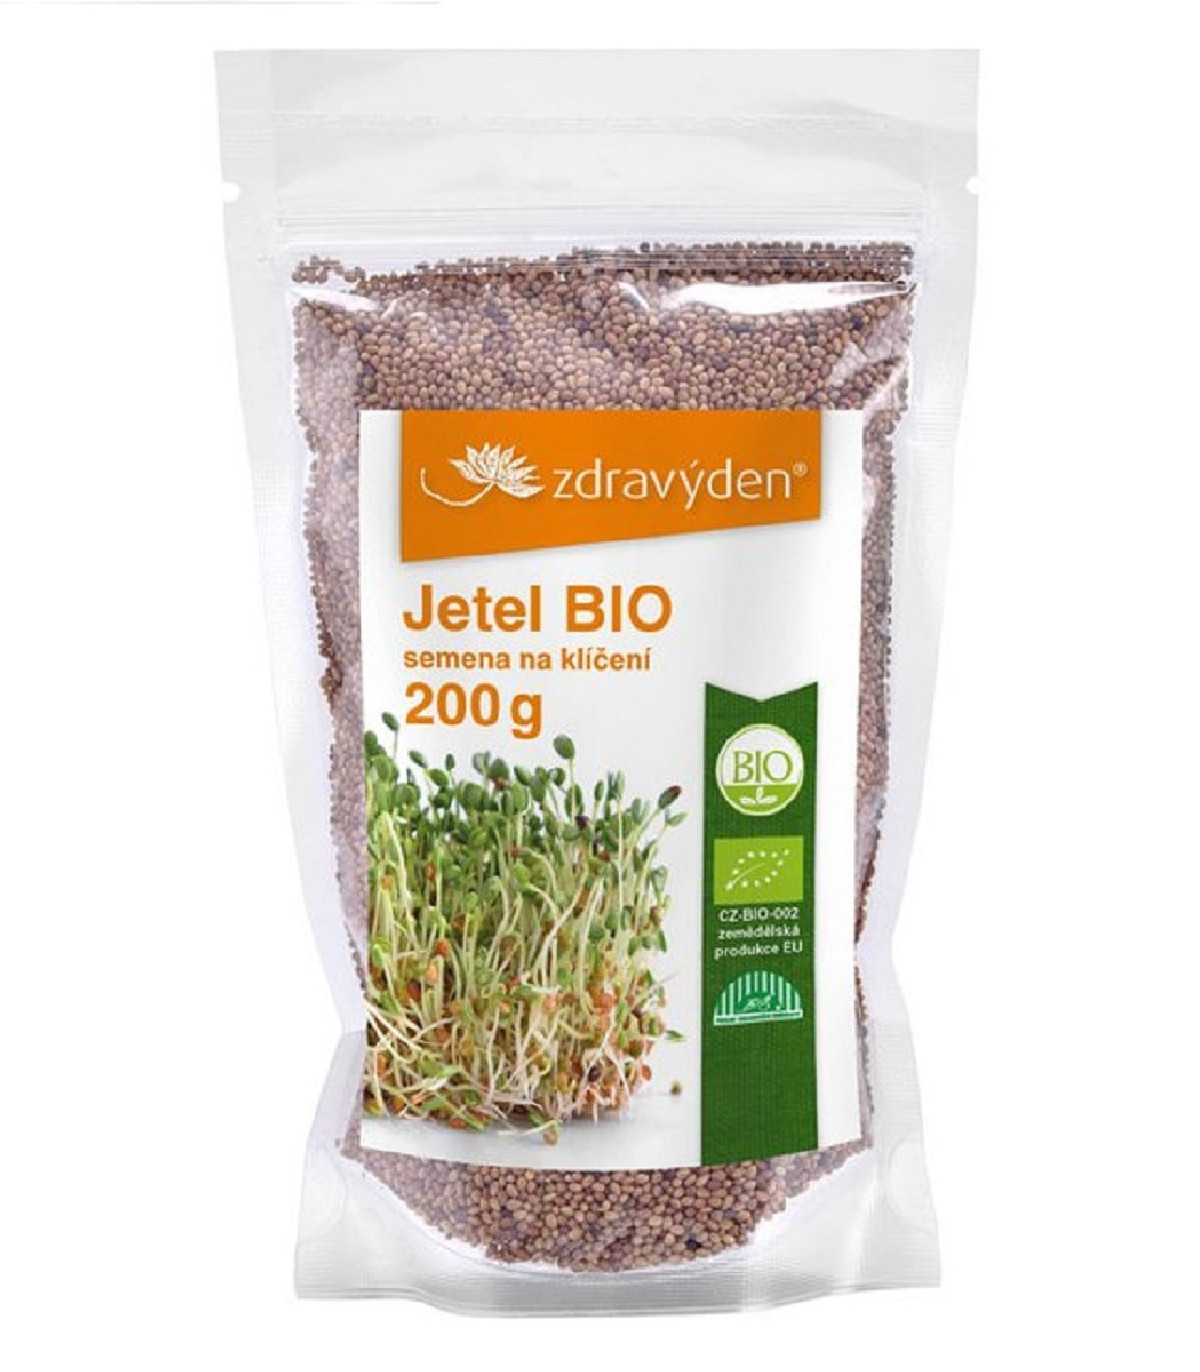 BIO Jetel - Zdravý den - bio osivo na klíčky - 200 g